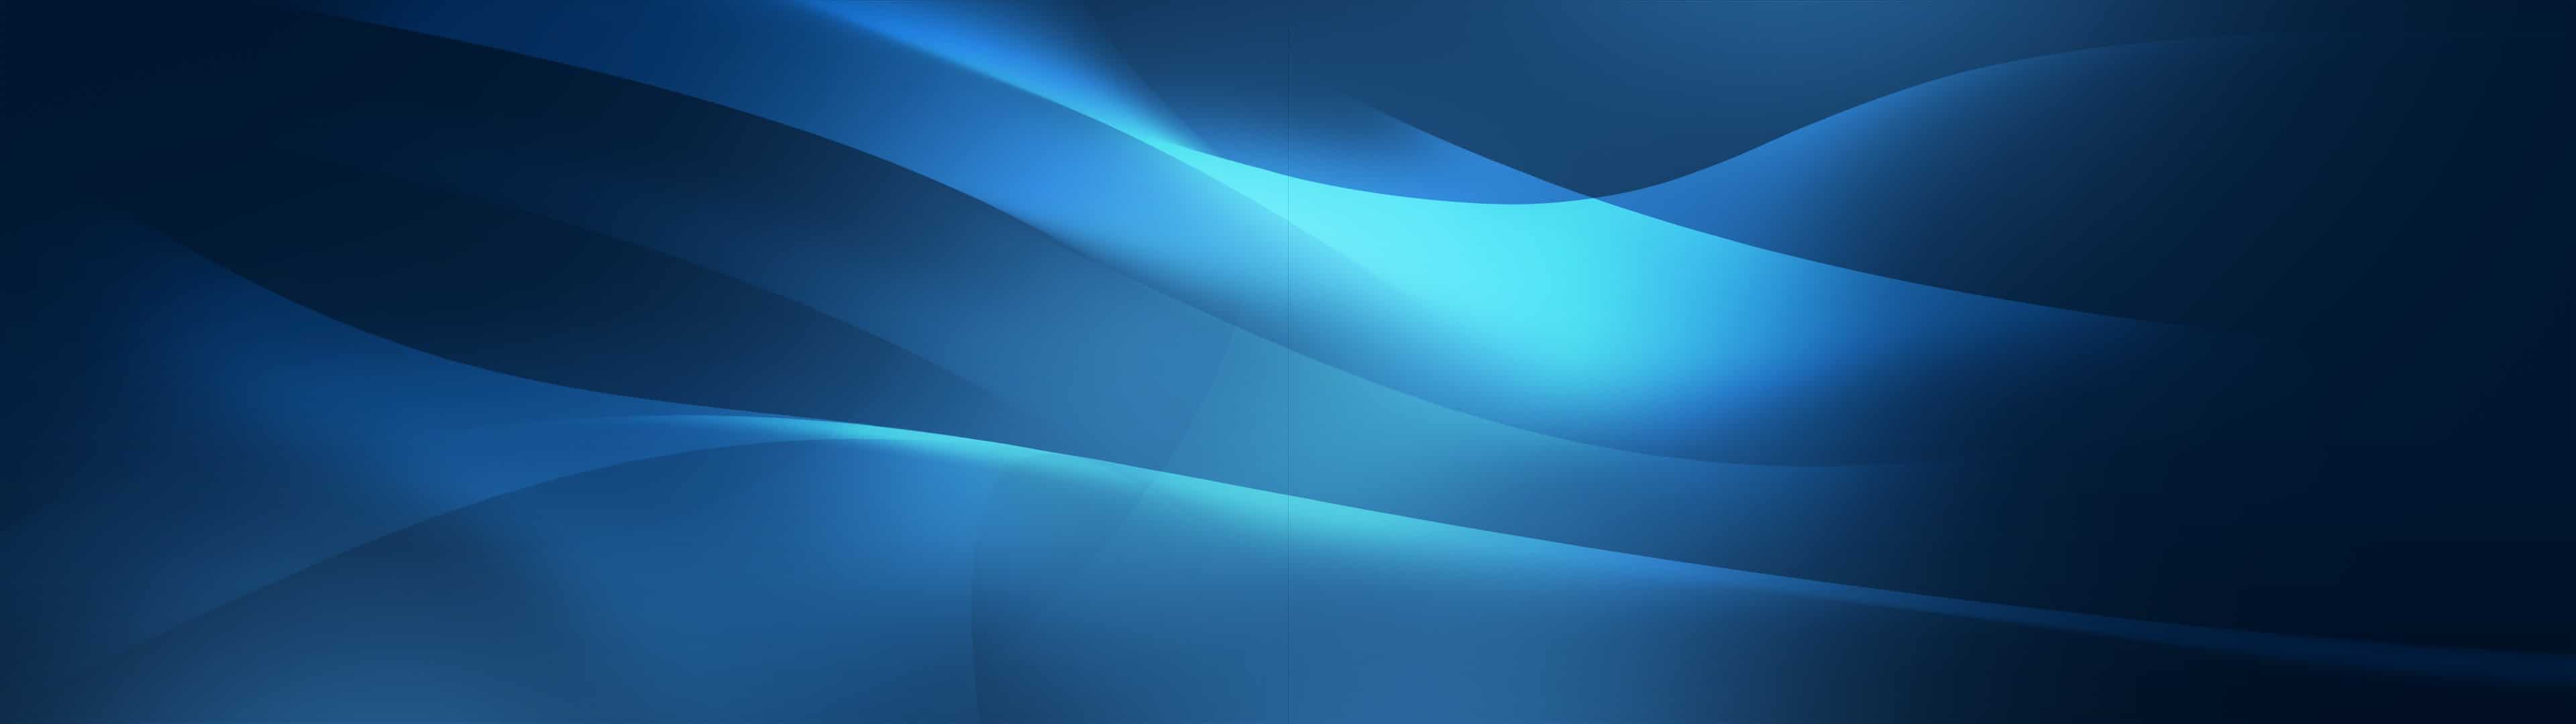 Nếu bạn muốn có một nền màn hình đôi màu xanh độc đáo, đẹp mắt thì hãy đến với chúng tôi! Chúng tôi sẽ cung cấp cho bạn những hình ảnh màu xanh đầy sáng tạo và ấn tượng để tạo nên một nền màn hình độc đáo cho máy tính của bạn.